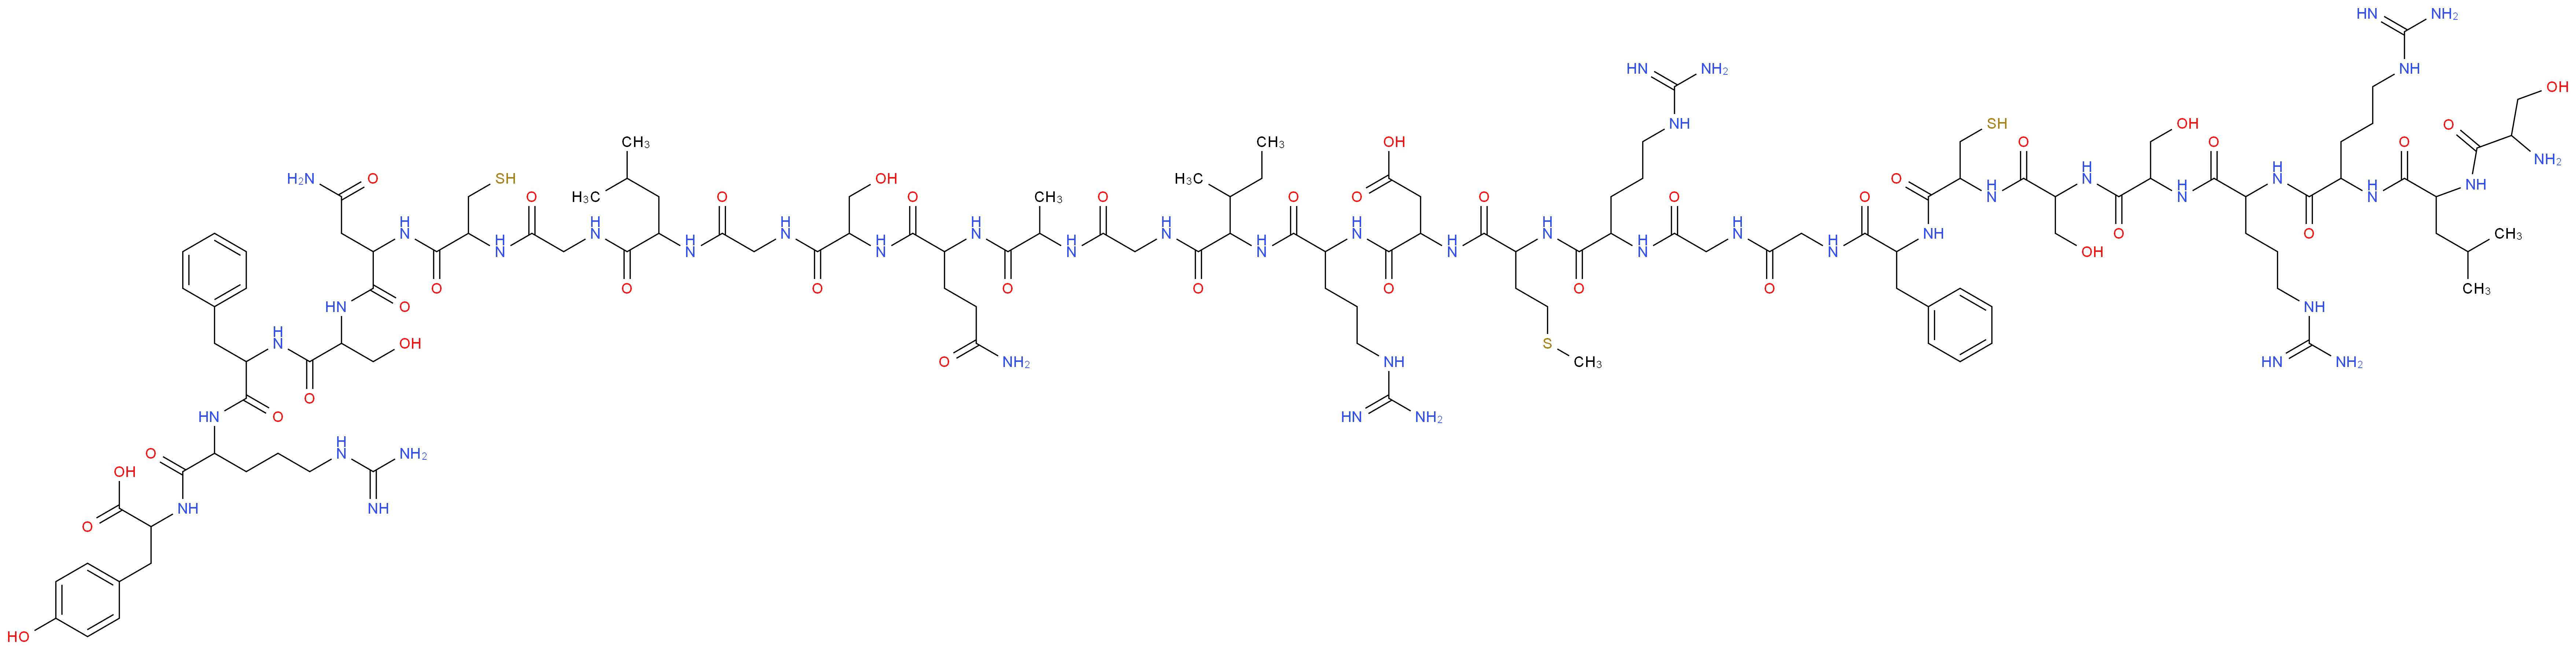 3-{2-[2-(2-{2-[2-(2-{2-[2-(2-{2-[2-(2-amino-3-hydroxypropanamido)-4-methylpentanamido]-5-carbamimidamidopentanamido}-5-carbamimidamidopentanamido)-3-hydroxypropanamido]-3-hydroxypropanamido}-3-sulfanylpropanamido)-3-phenylpropanamido]acetamido}acetamido)-5-carbamimidamidopentanamido]-4-(methylsulfanyl)butanamido}-3-({4-carbamimidamido-1-[(1-{[({1-[(1-{[1-({[(1-{[({1-[(1-{[1-({1-[(4-carbamimidamido-1-{[1-carboxy-2-(4-hydroxyphenyl)ethyl]carbamoyl}butyl)carbamoyl]-2-phenylethyl}carbamoyl)-2-hydroxyethyl]carbamoyl}-2-carbamoylethyl)carbamoyl]-2-sulfanylethyl}carbamoyl)methyl]carbamoyl}-3-methylbutyl)carbamoyl]methyl}carbamoyl)-2-hydroxyethyl]carbamoyl}-3-carbamoylpropyl)carbamoyl]ethyl}carbamoyl)methyl]carbamoyl}-2-methylbutyl)carbamoyl]butyl}carbamoyl)propanoic acid_分子结构_CAS_91917-63-4